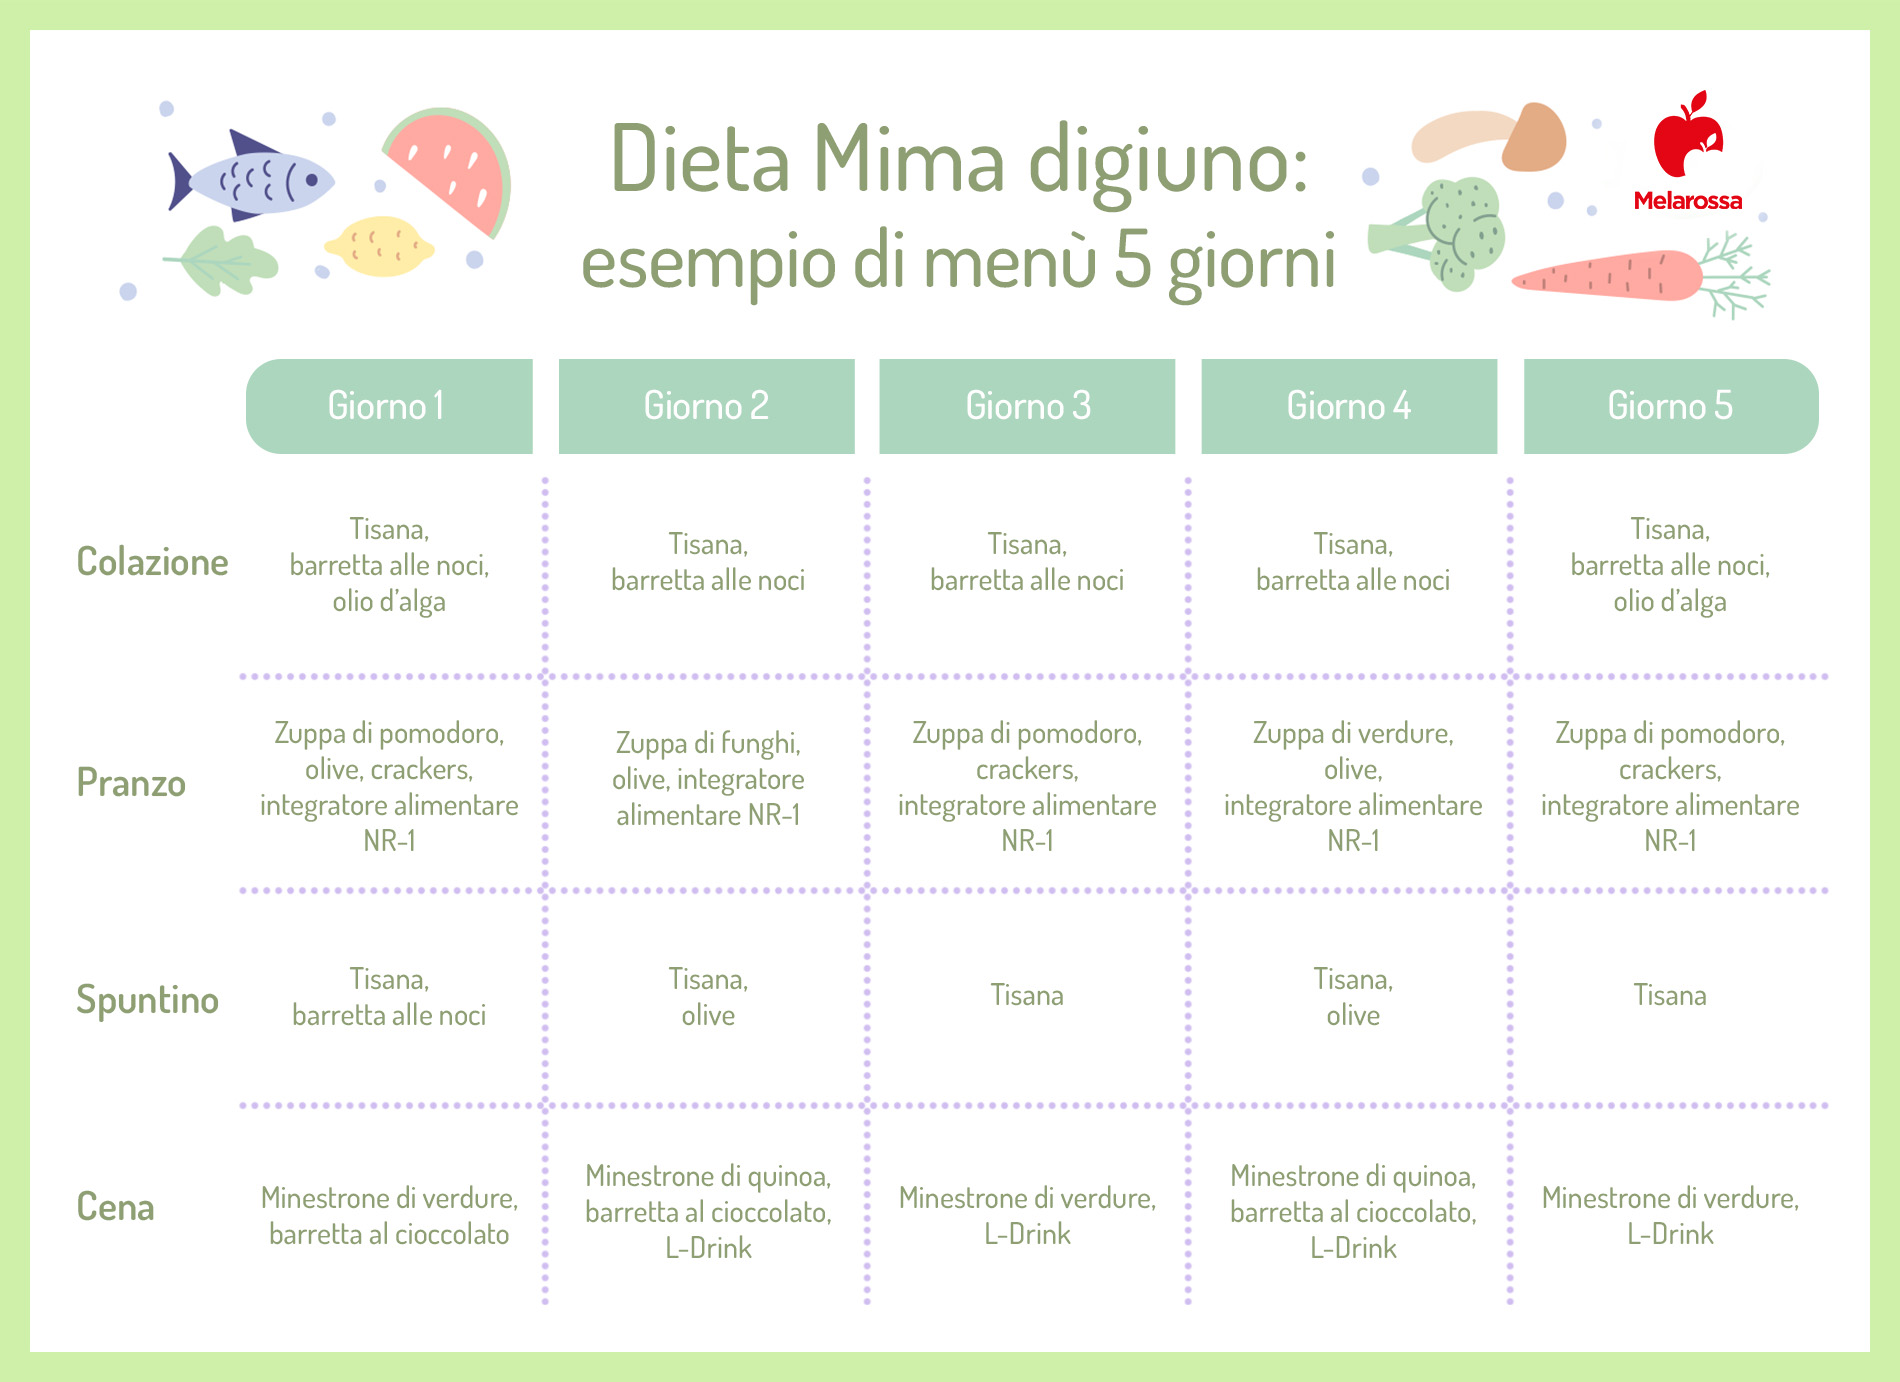 dieta Mimma digiuno: esempio di menù di 5 giorni 